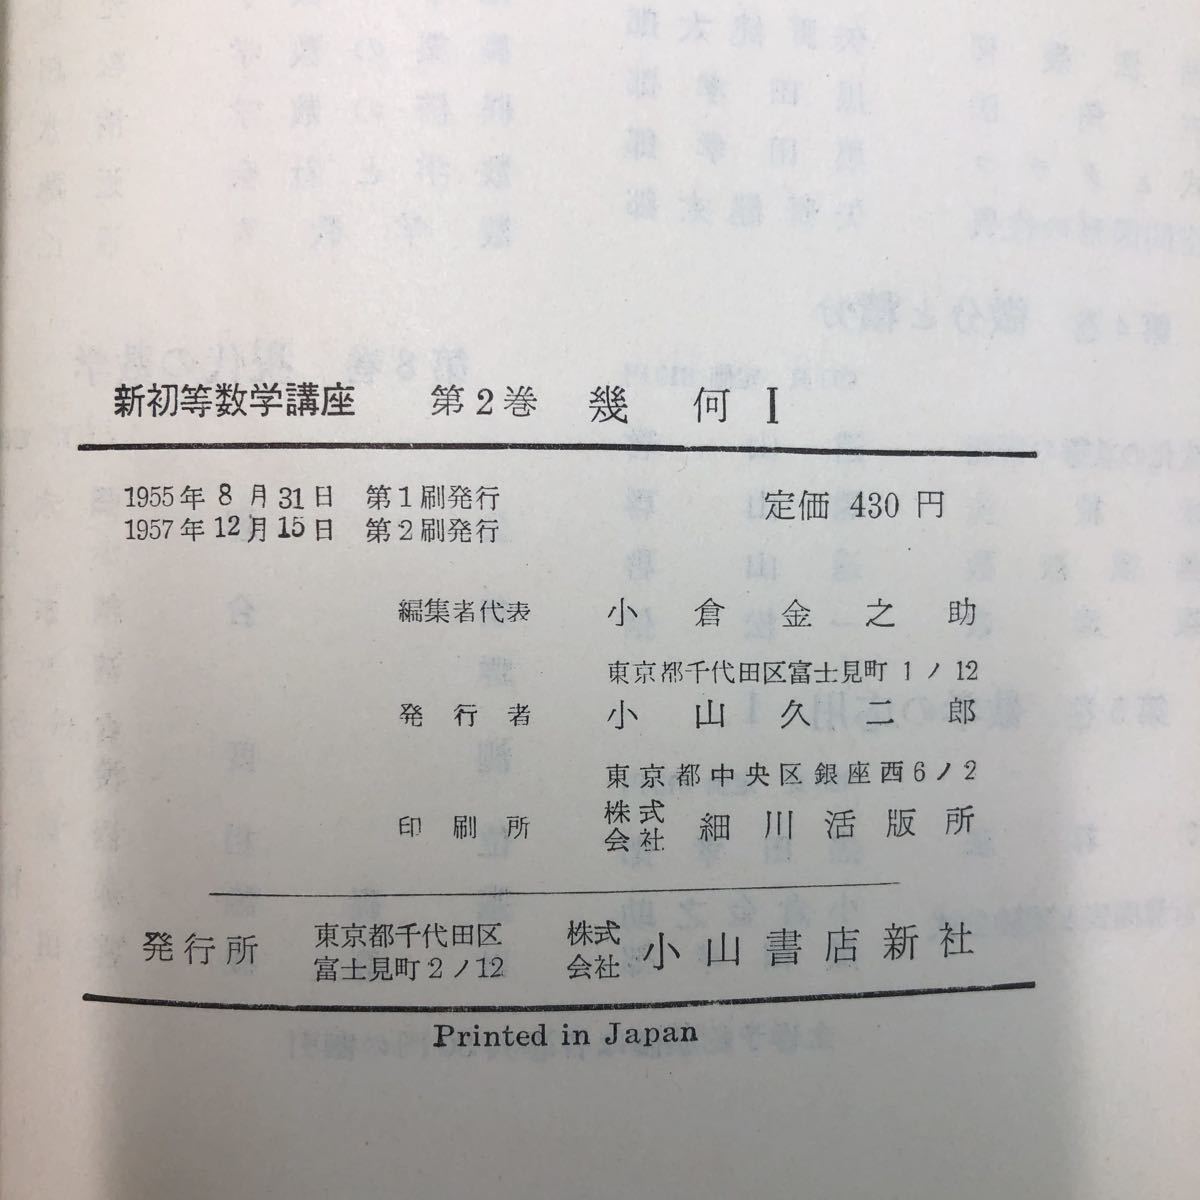 S6h-095 幾何Ⅰ 新初等数学講座 第2巻 編者 小倉金之助 1957年12月15日